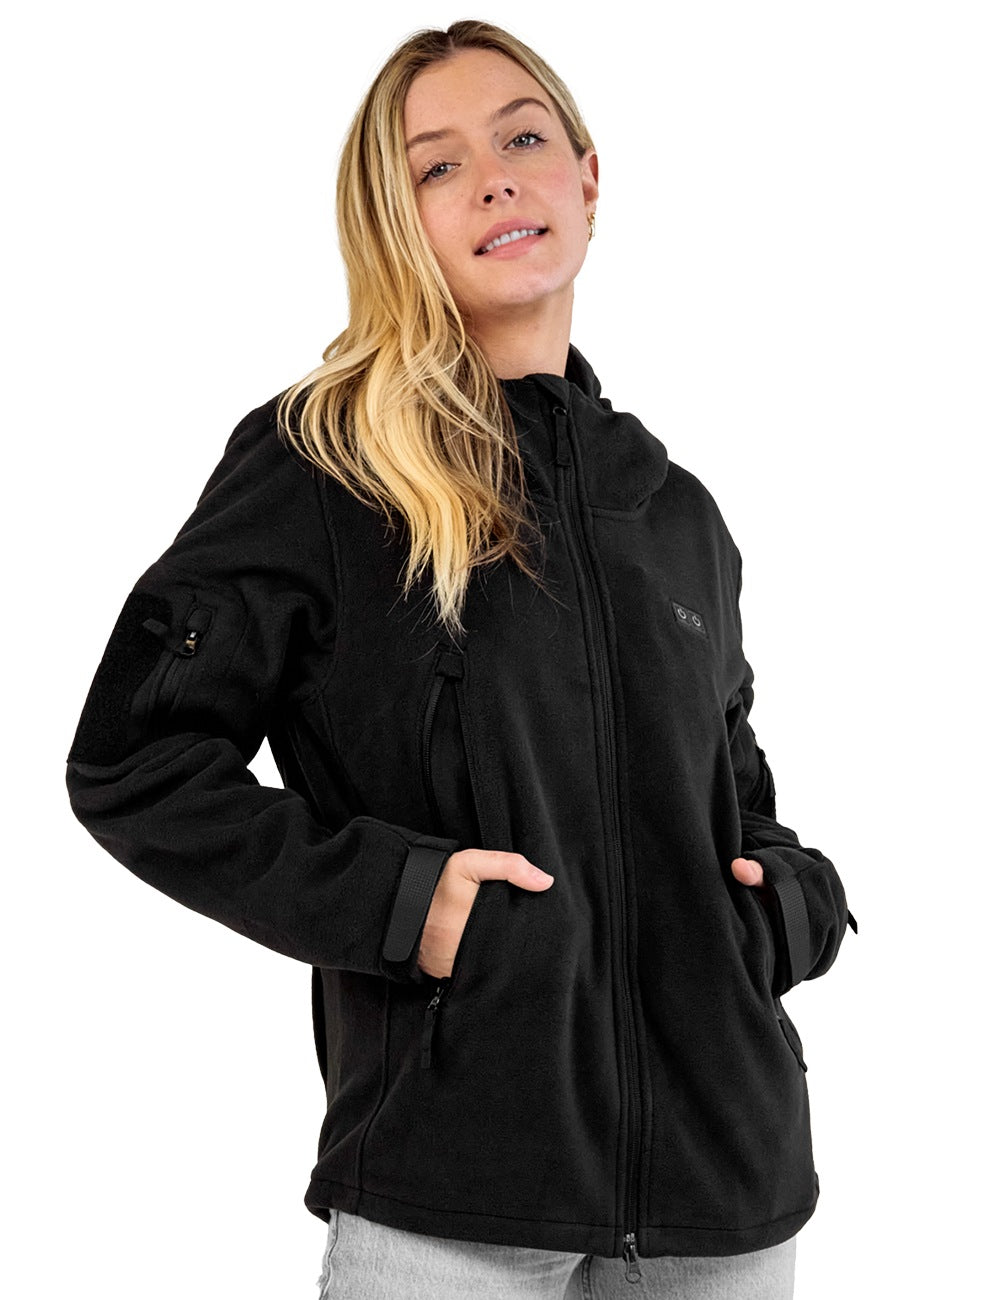 ANTARCTICA Fleece Heating Jacket, Fit Zip Hood Winter Jacket For Men